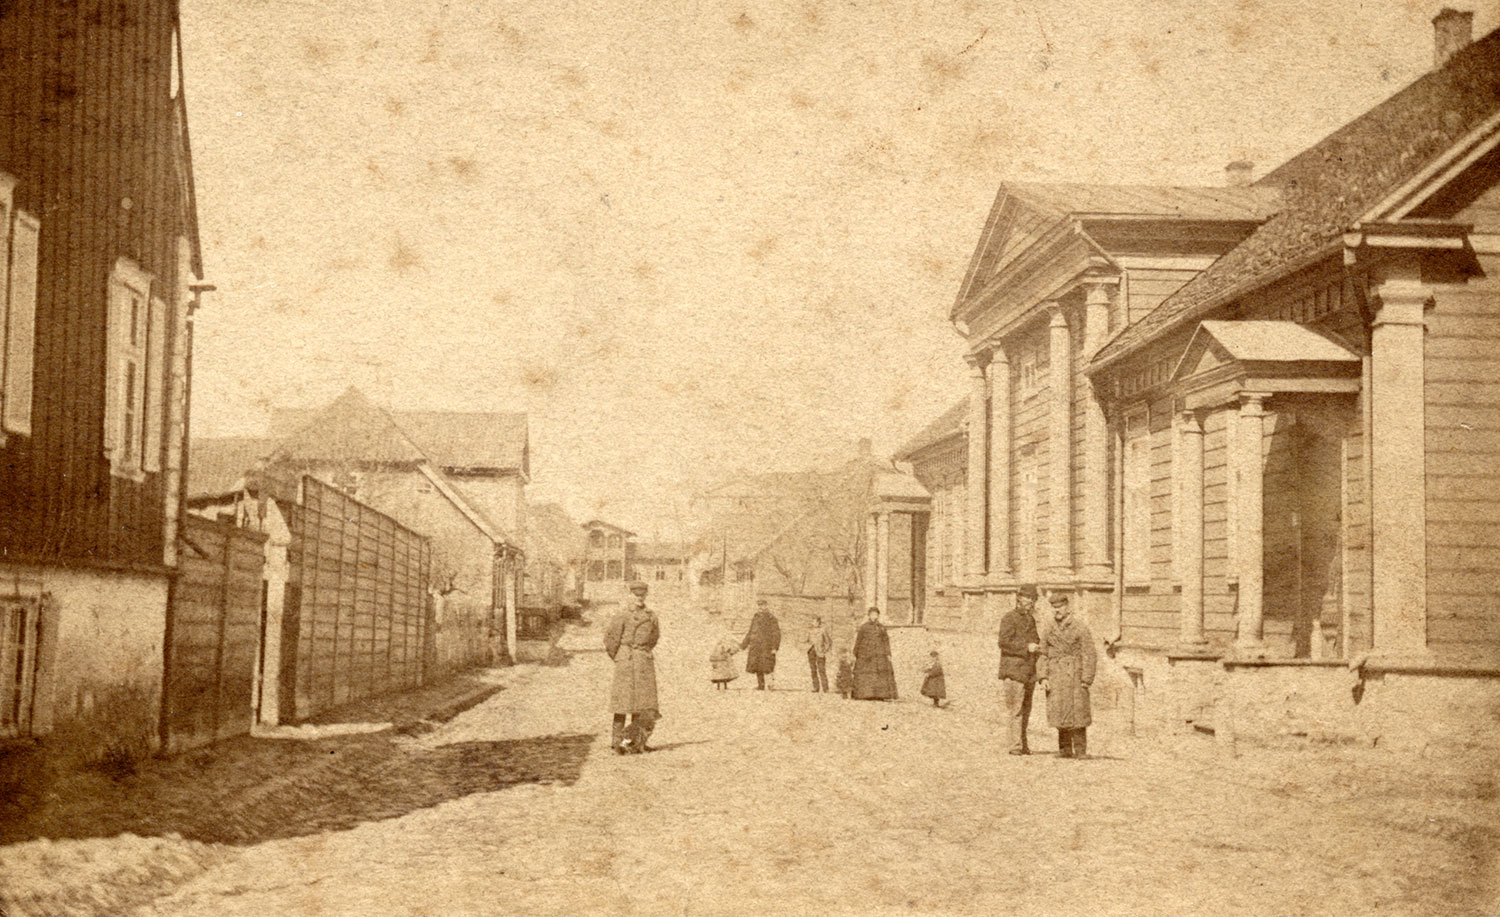 Posti tänava vaade u 1880.